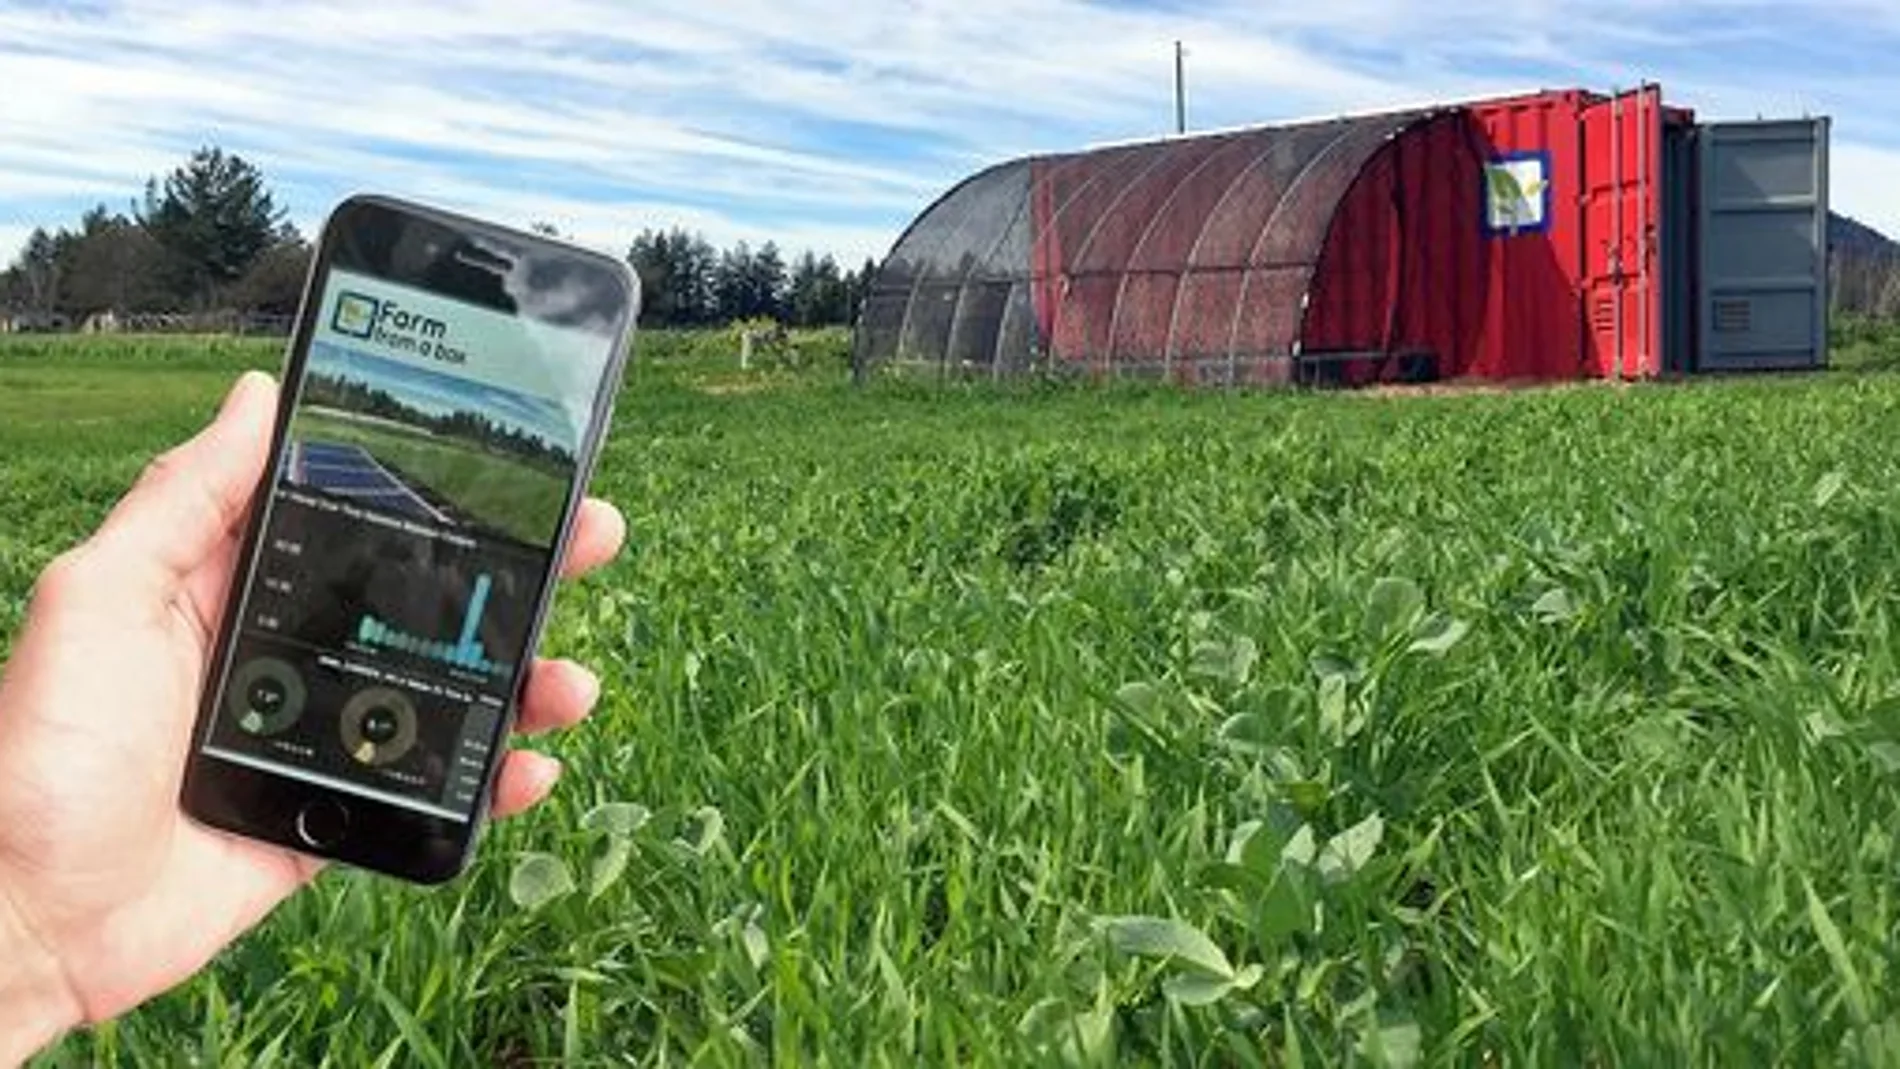 La telefonía móvil permite hacer un seguimiento de cualquier problema que pueda surgir / Foto: farm from a box